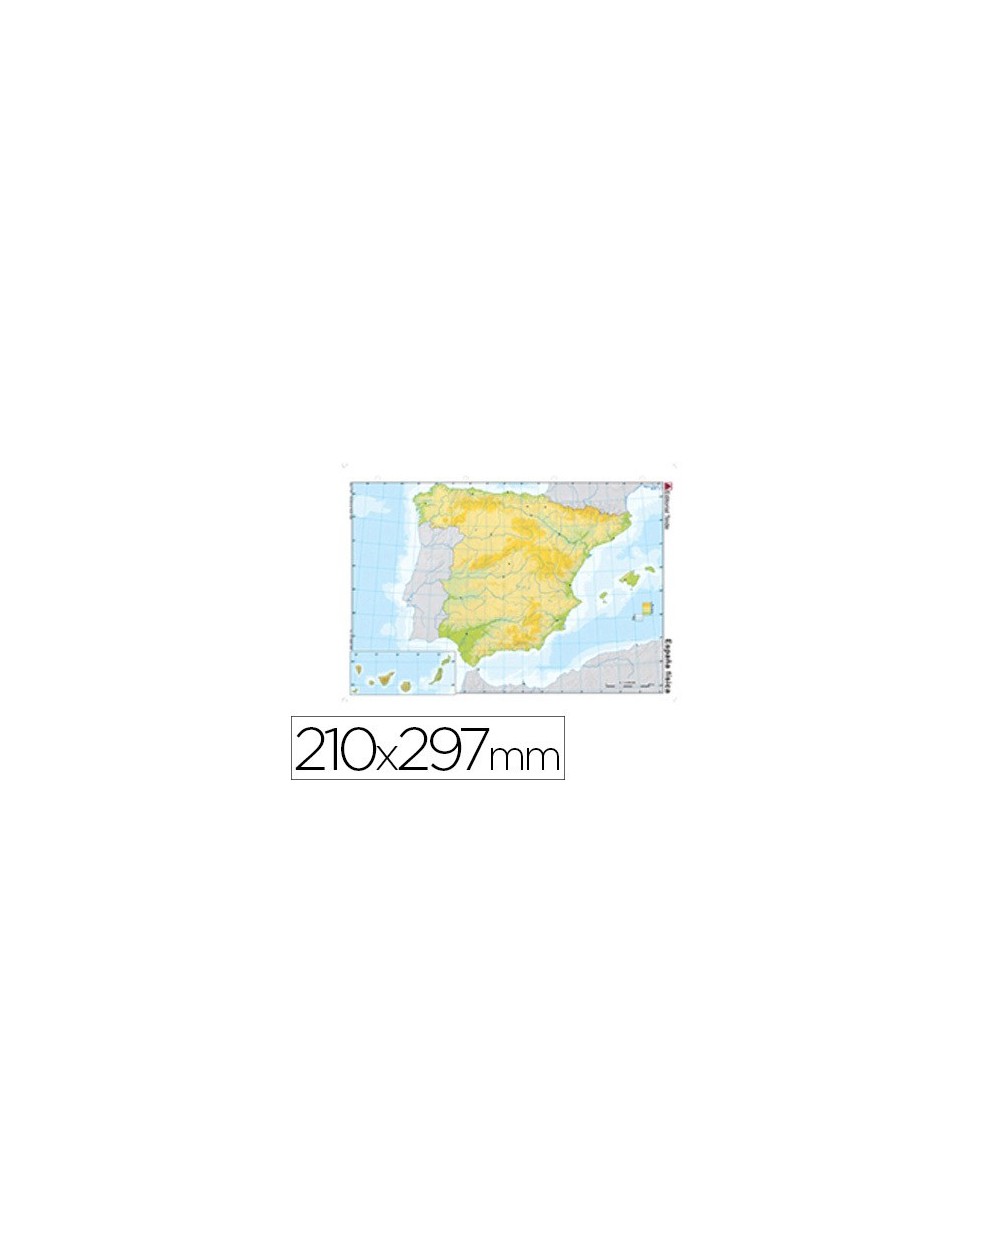 Mapa mudo color din a4 espana fisico